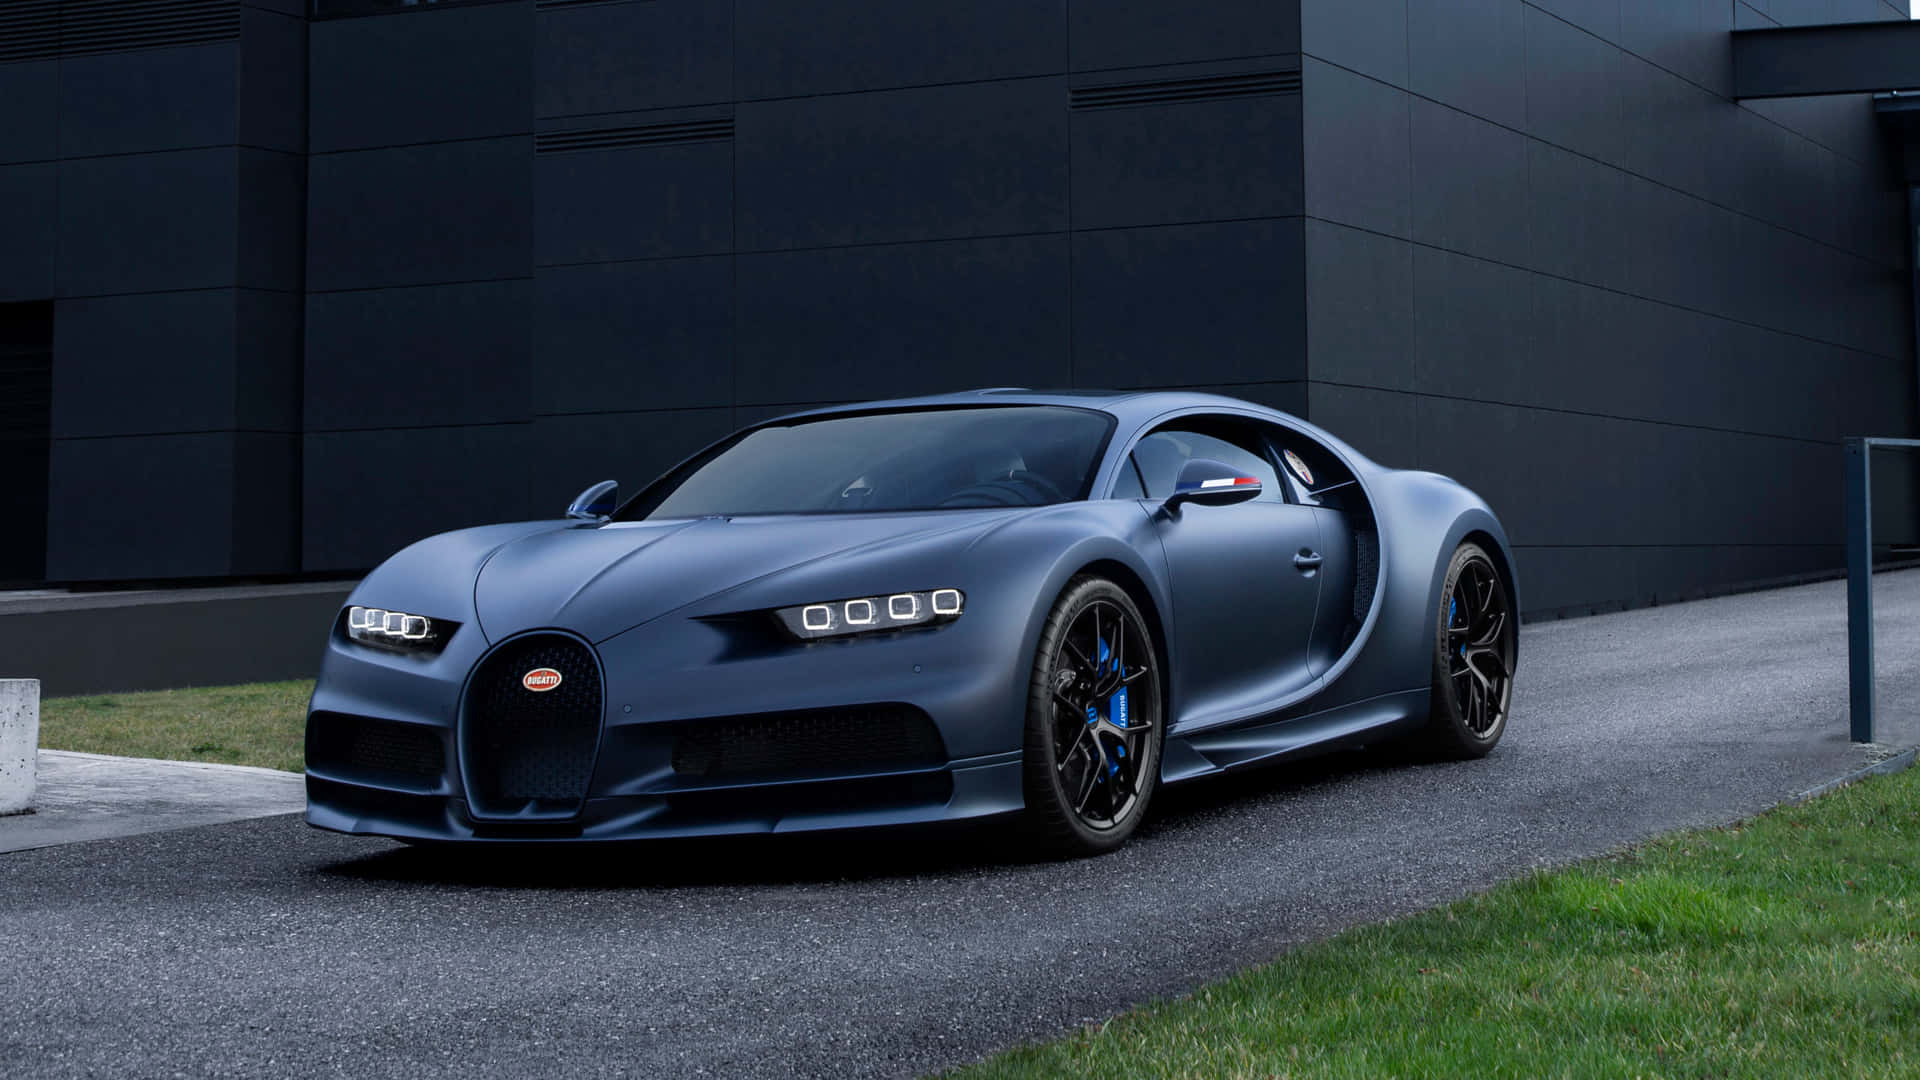 Tag din tur til det næste niveau med den legendariske Best Bugatti. Wallpaper